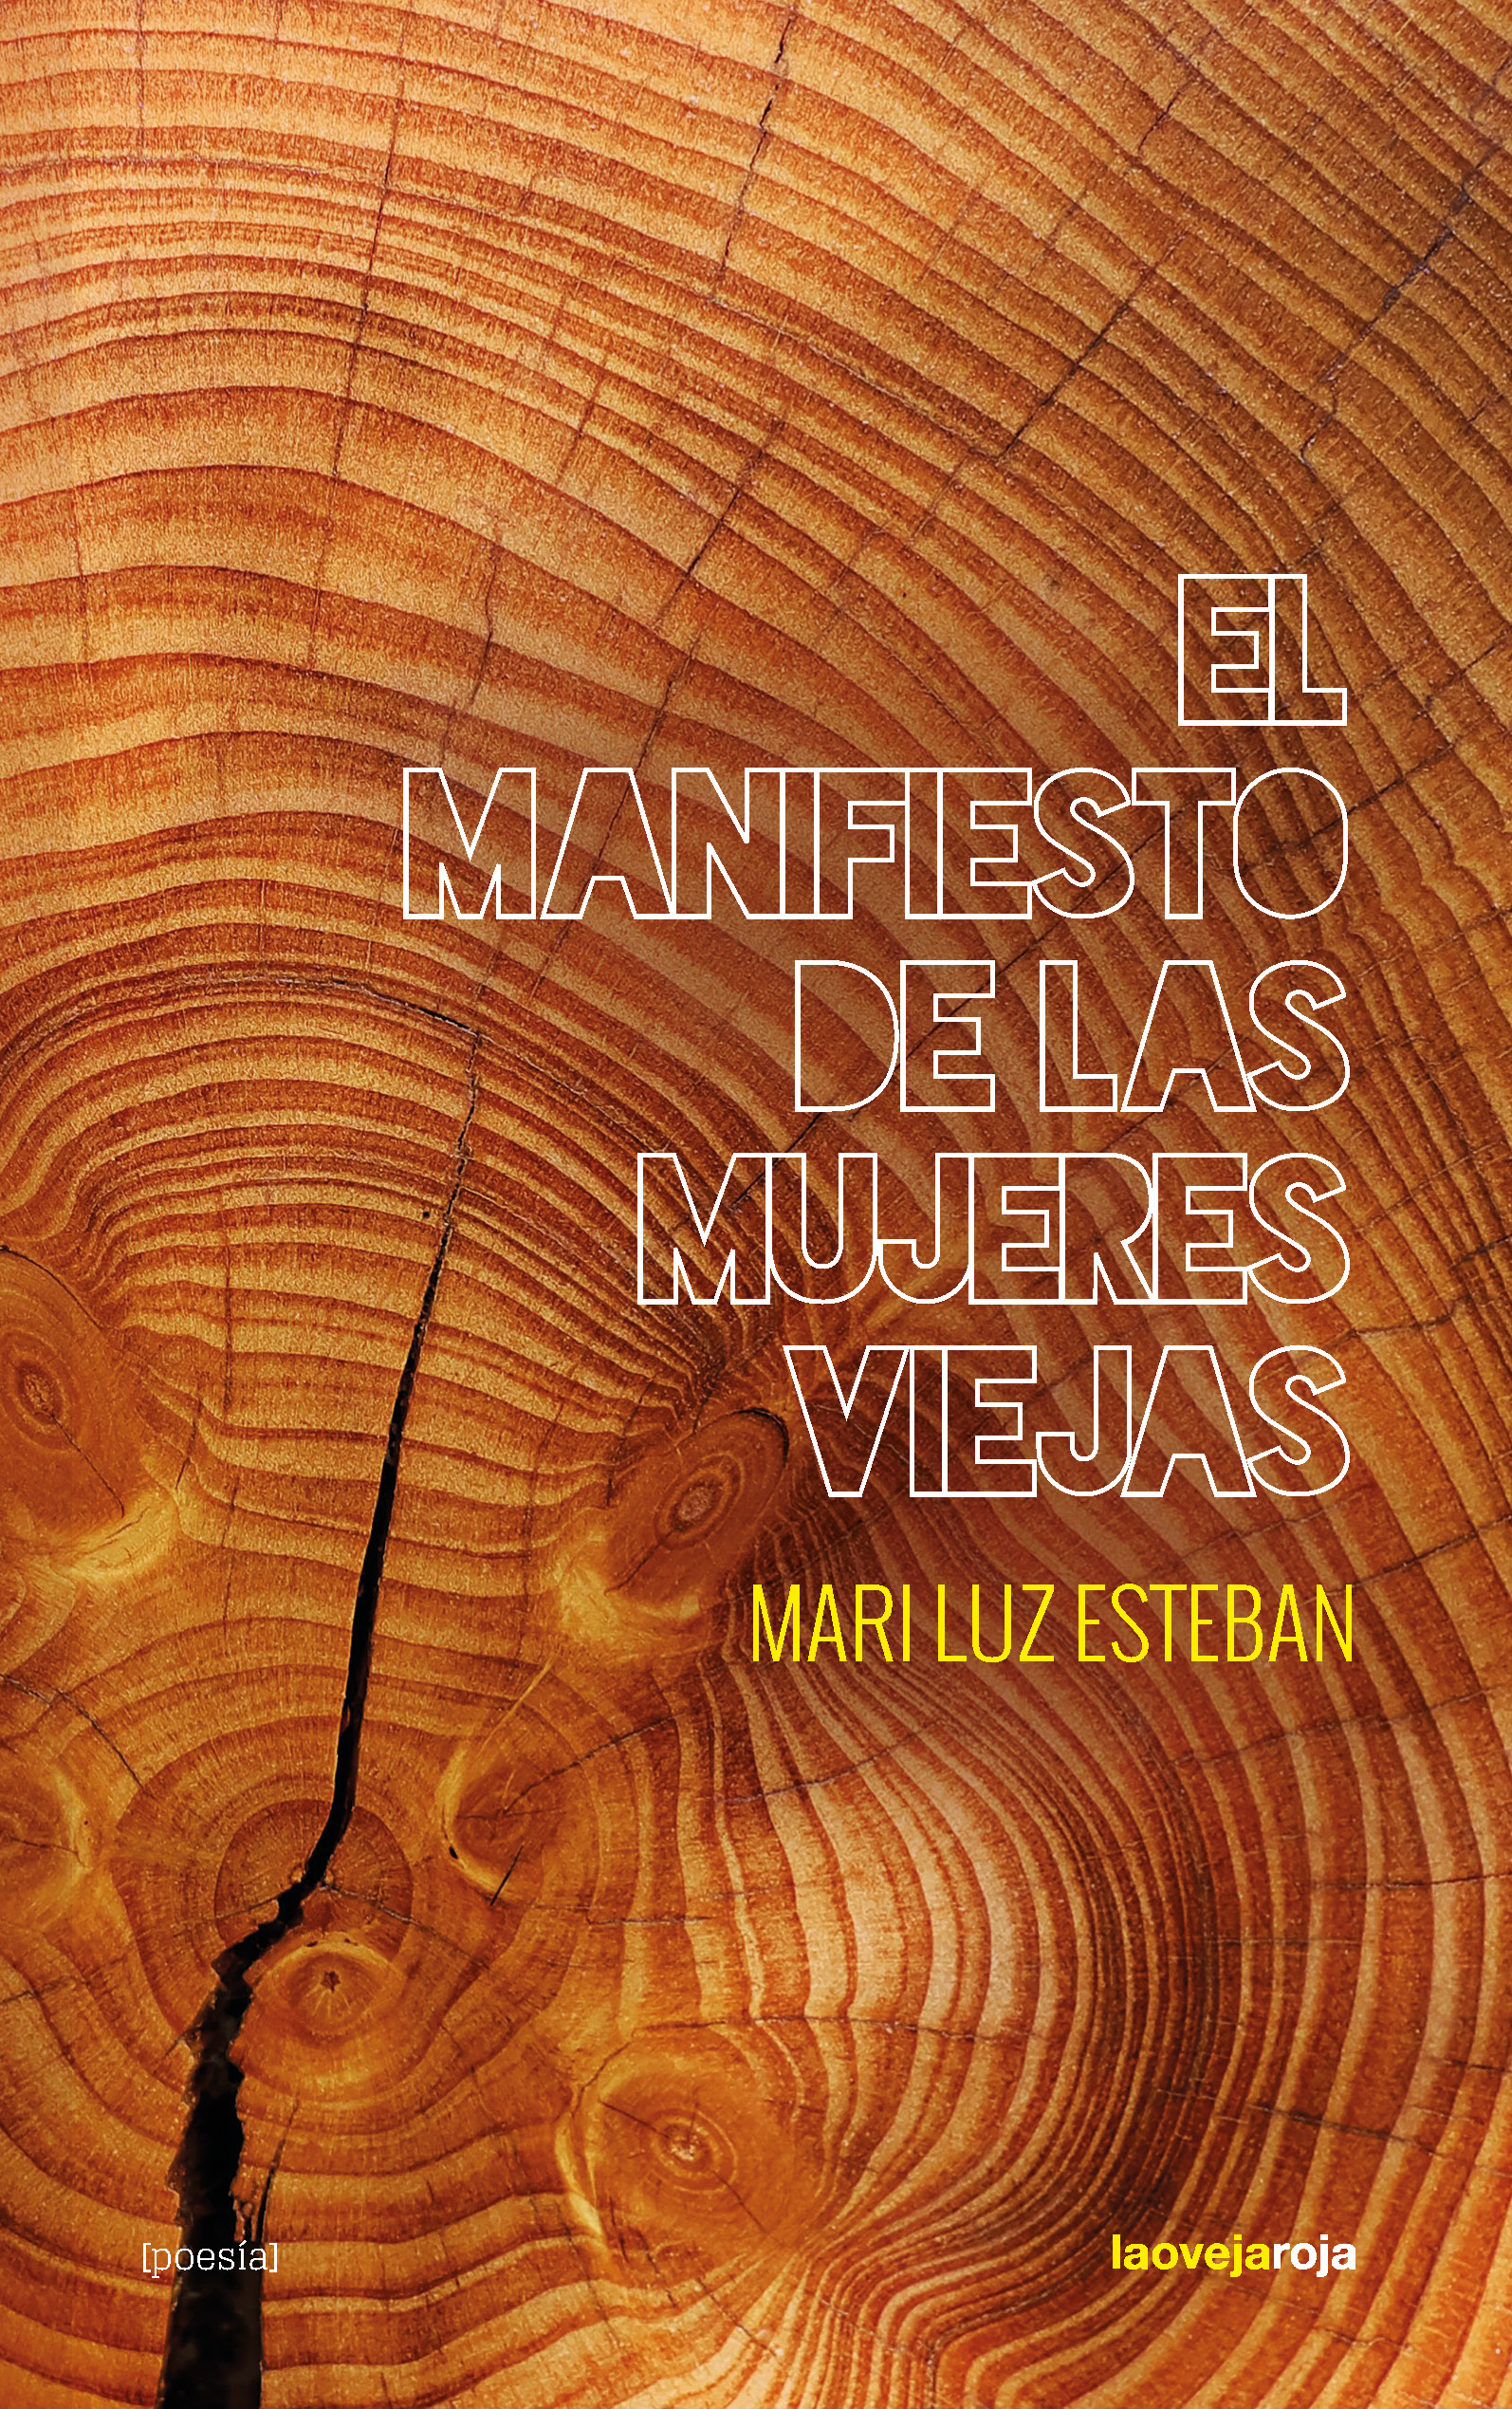 El manifiesto de las mujeres viejas - Mari Luz Esteban